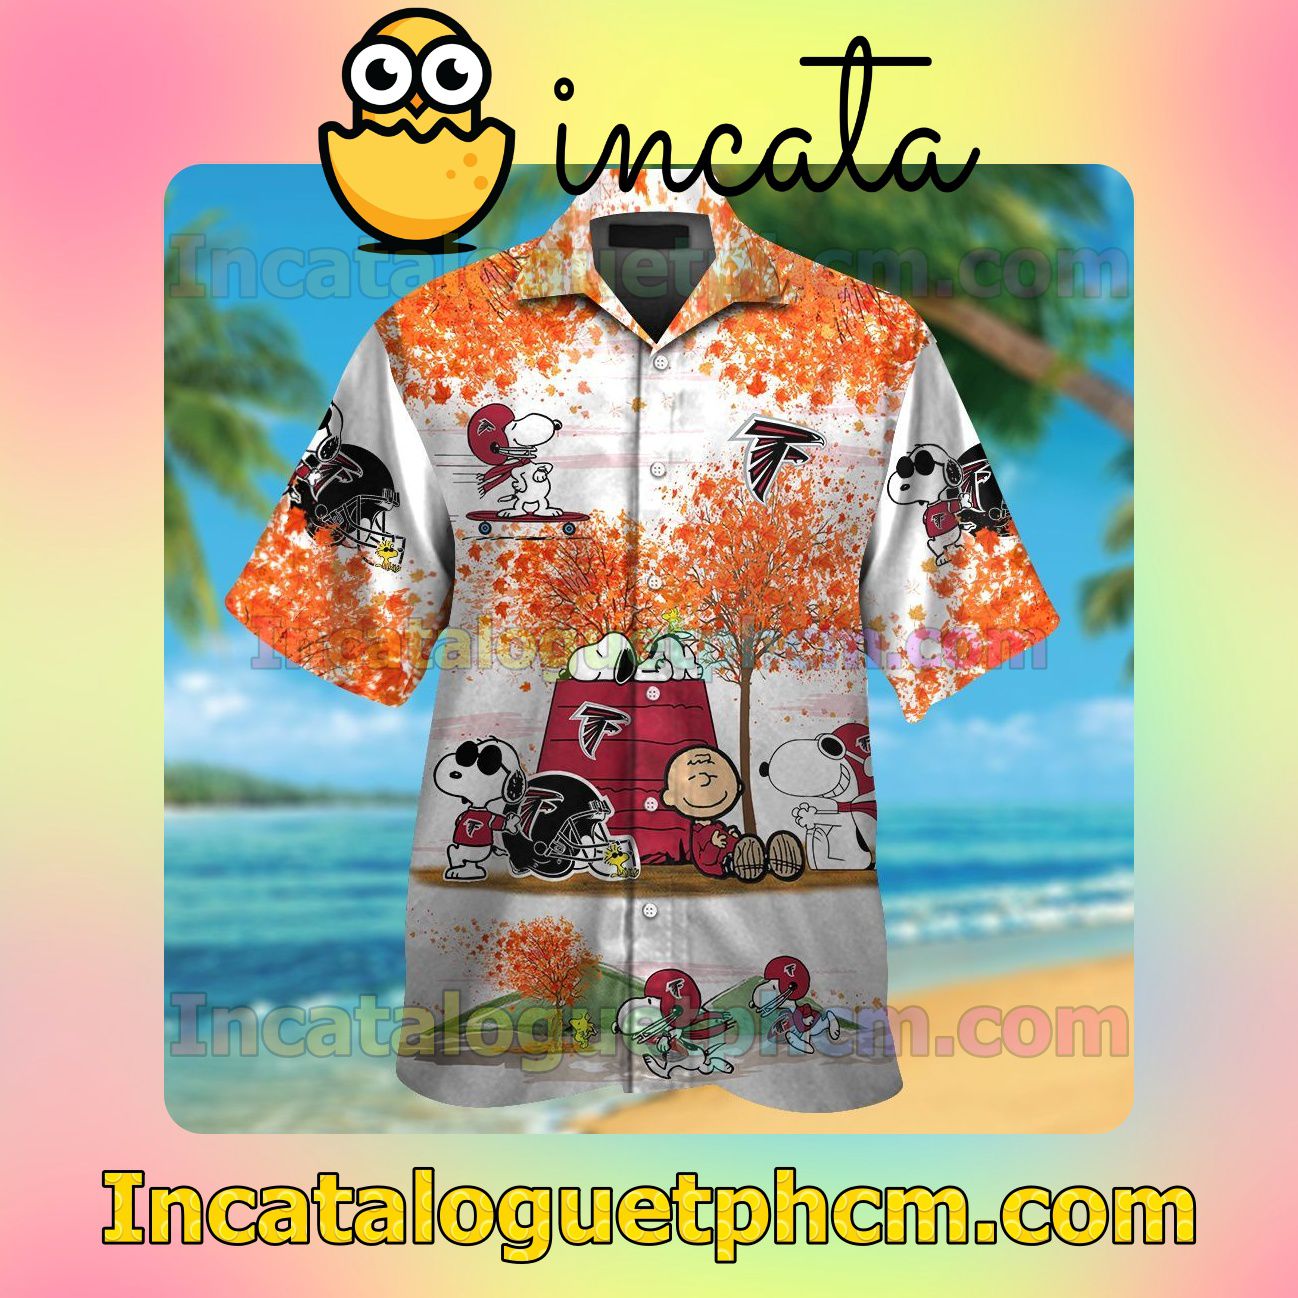 Atlanta Falcons Snoopy Autumn Beach Vacation Shirt, Swim Shorts